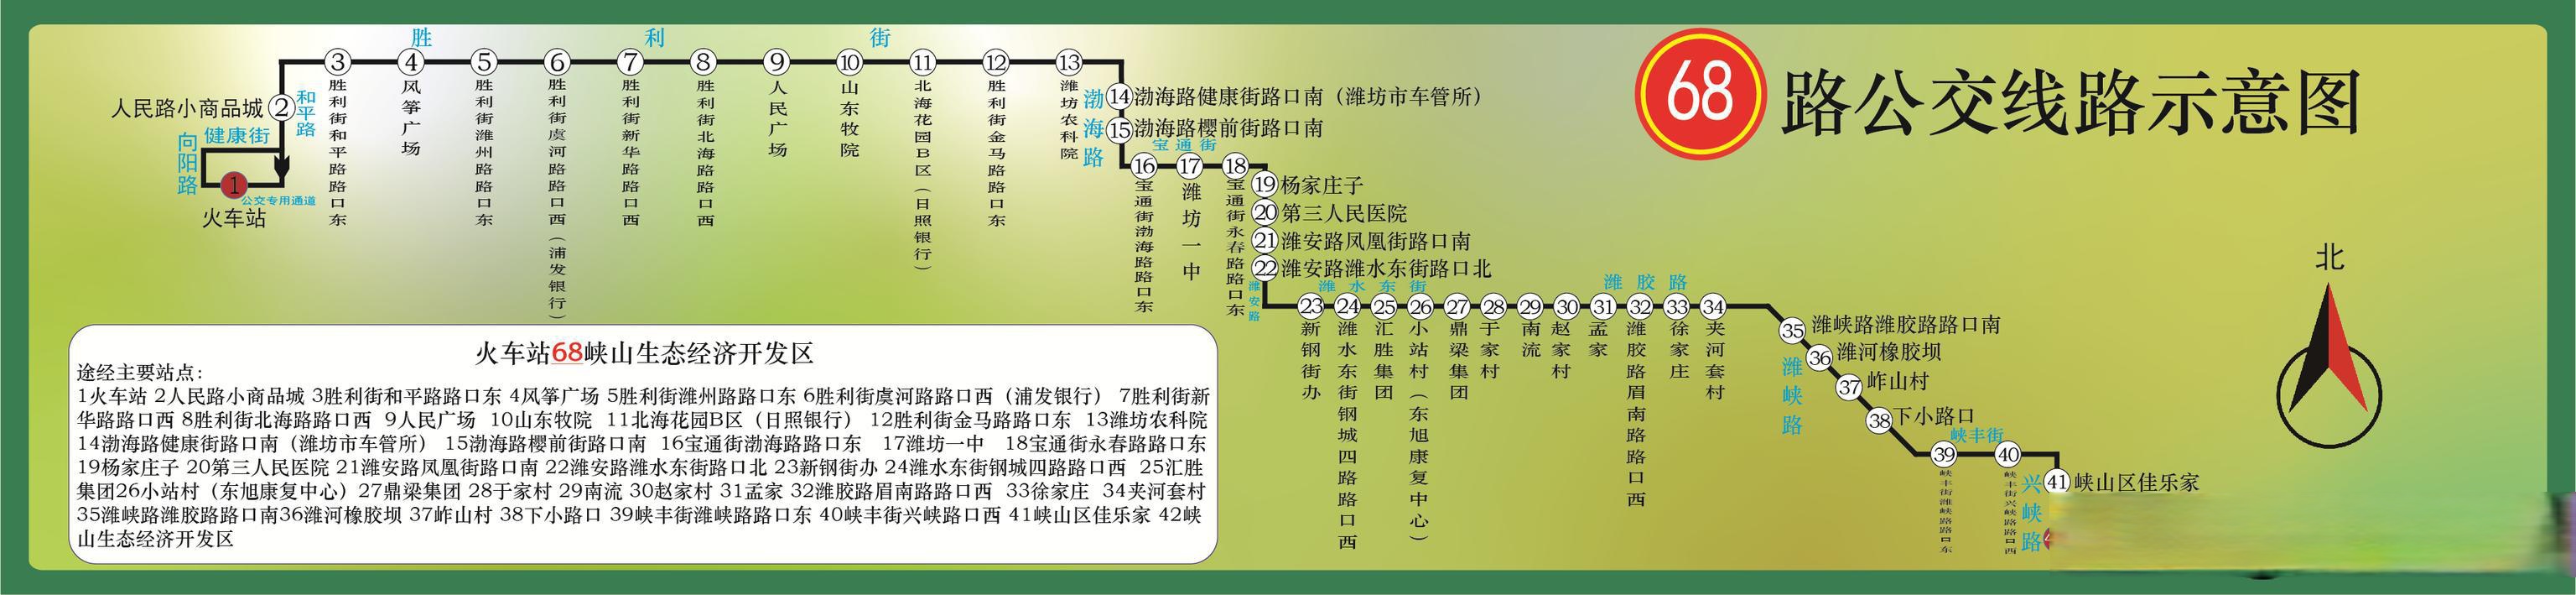 潍坊公交集团对68路局部走向进行优化调整